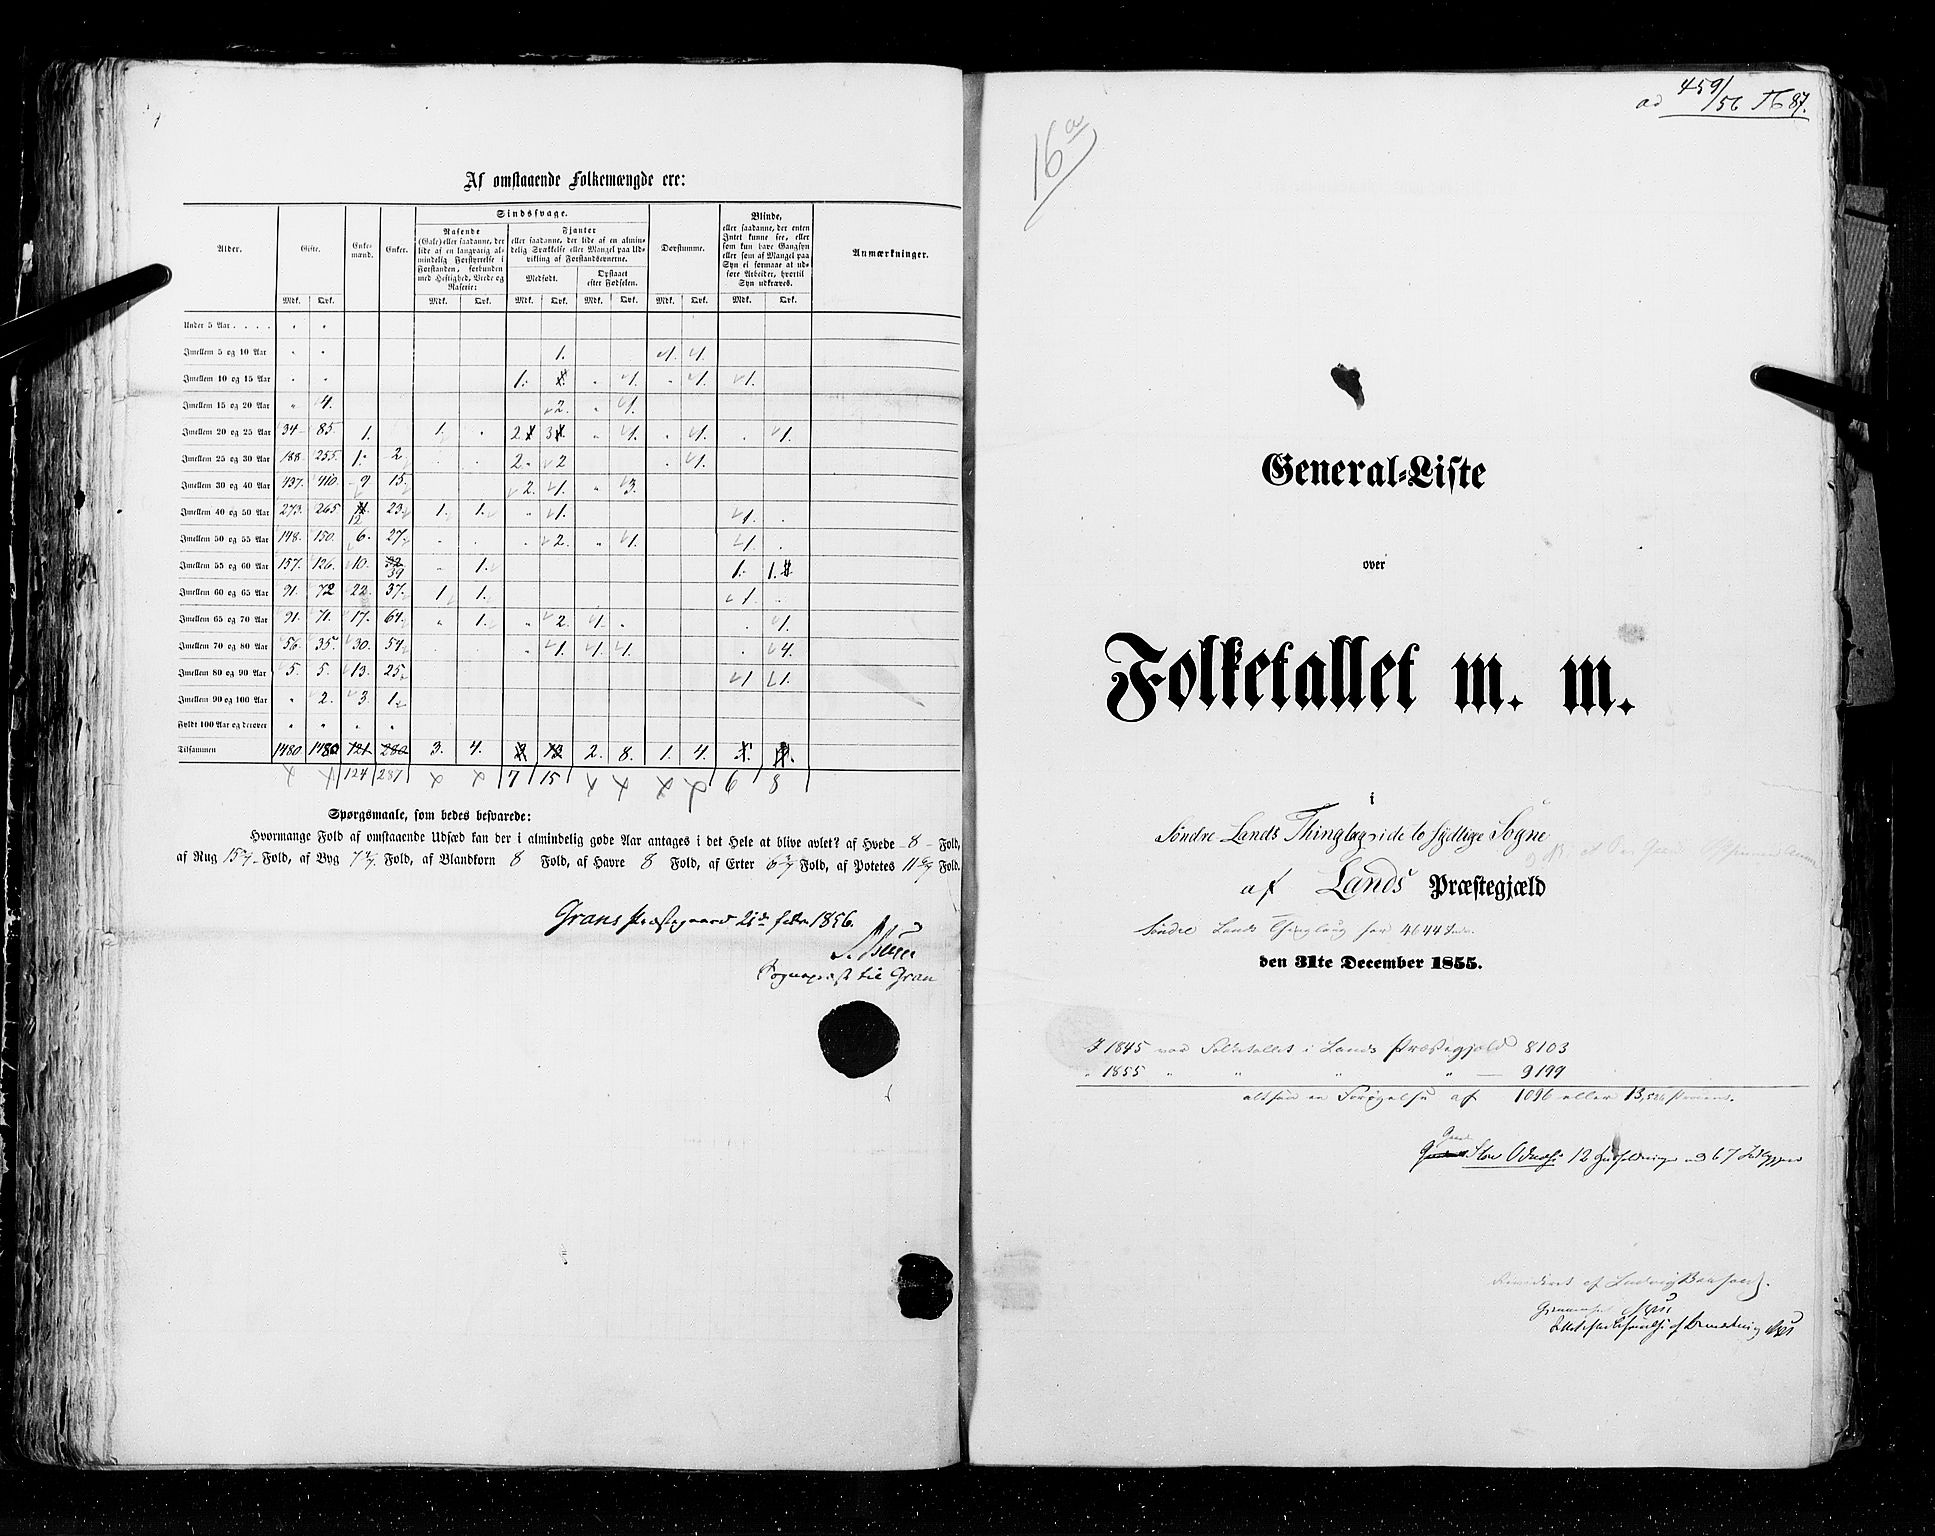 RA, Folketellingen 1855, bind 2: Kristians amt, Buskerud amt og Jarlsberg og Larvik amt, 1855, s. 87